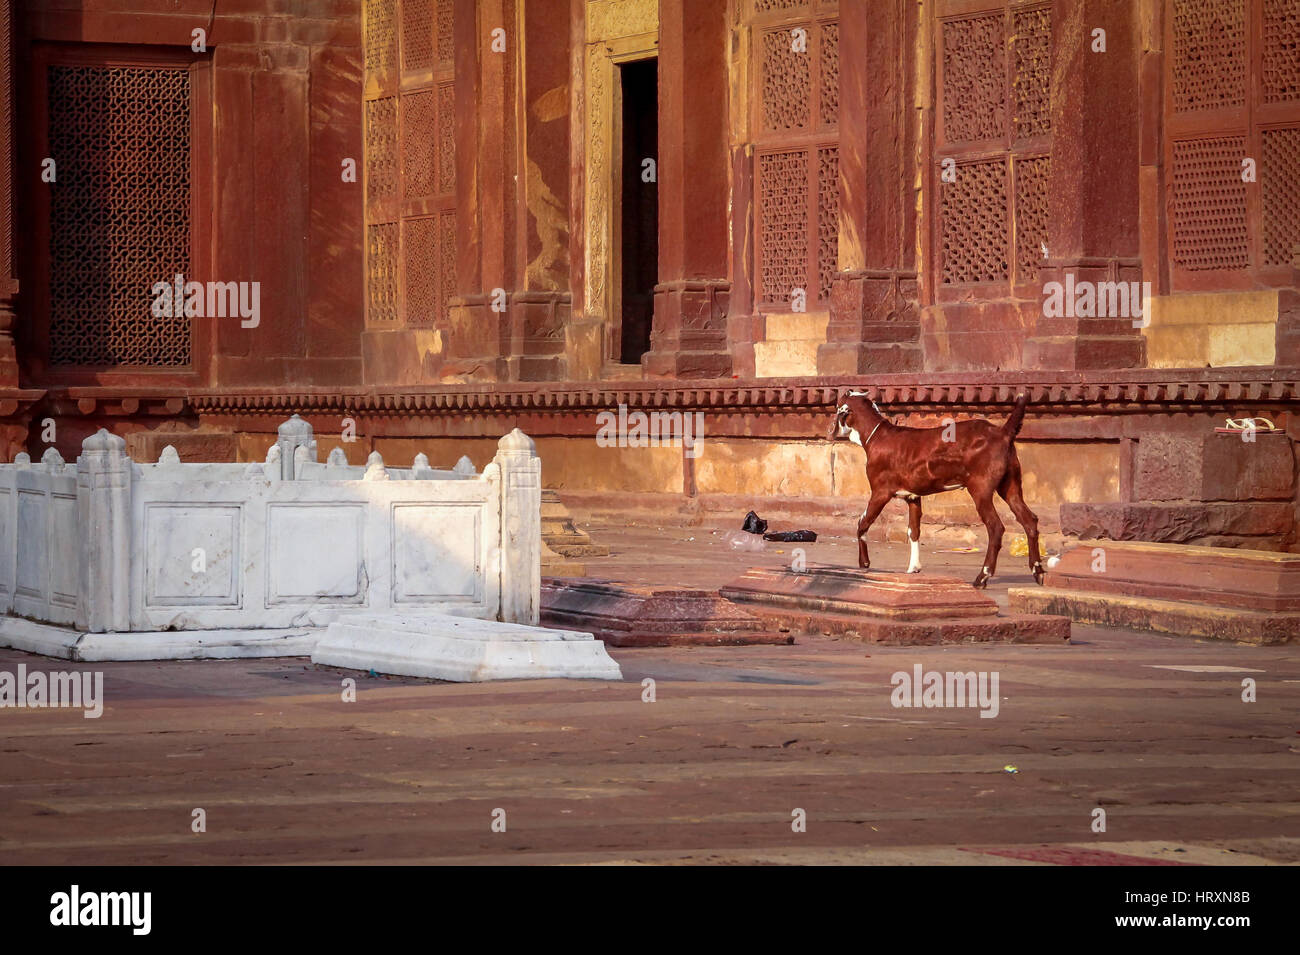 Ziege in der Nähe von einem Grab in Fatehpur Sikri - Indien Stockfoto